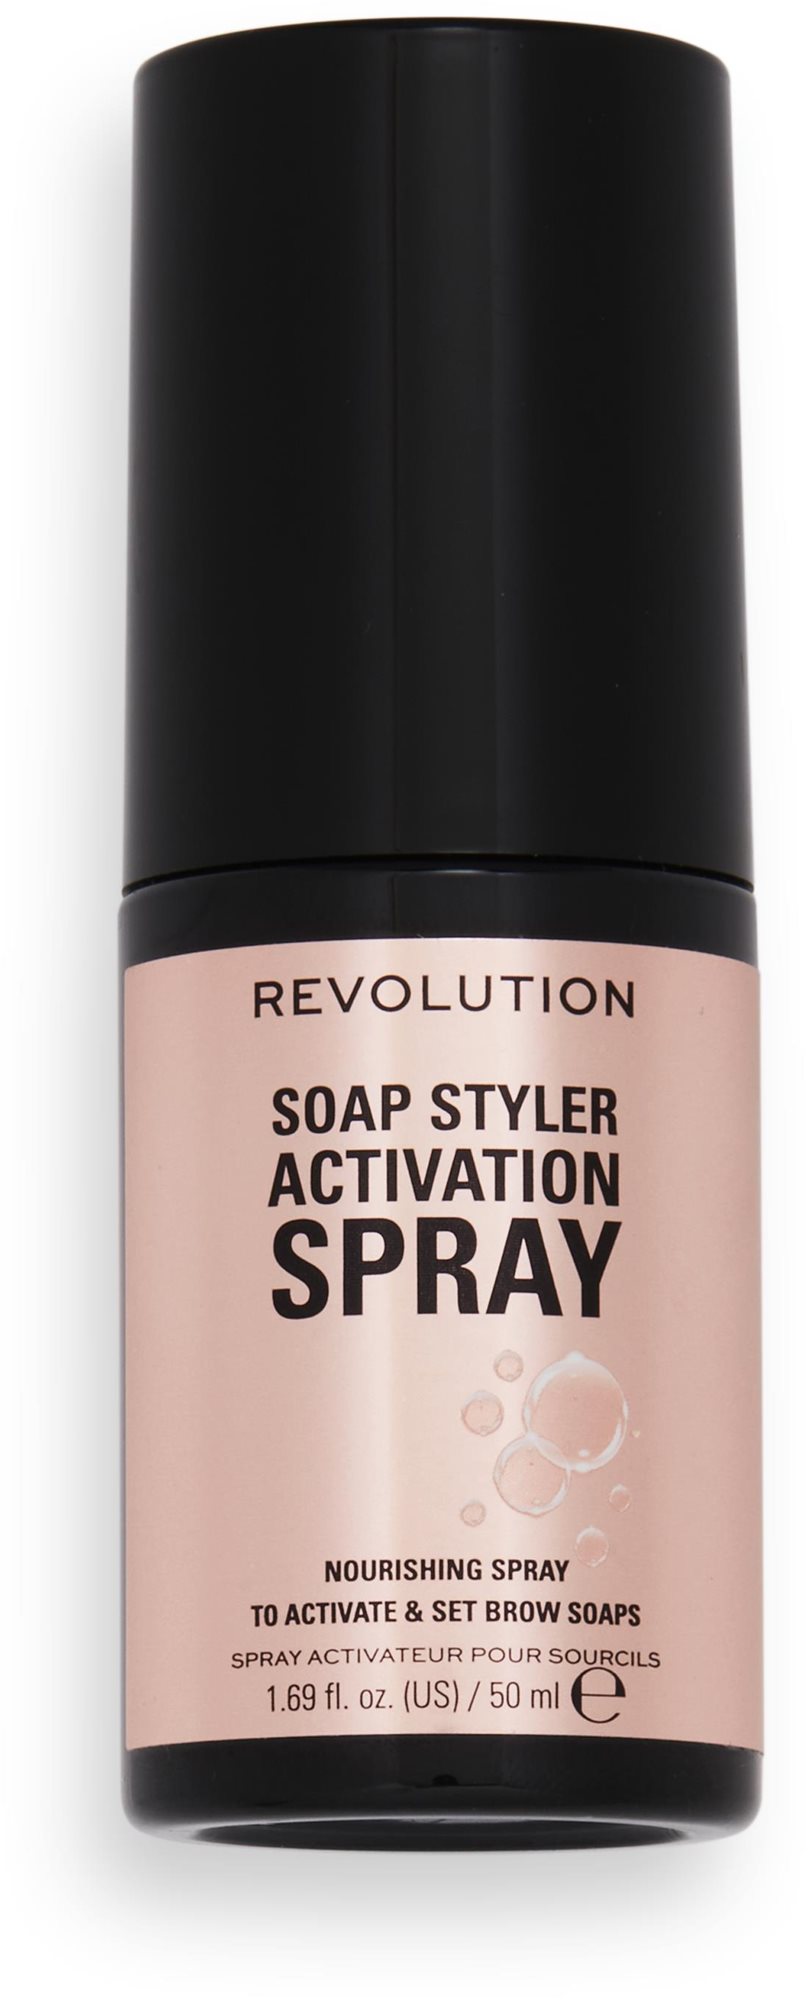 Spray REVOLUTION Soap Styler Activation Spray